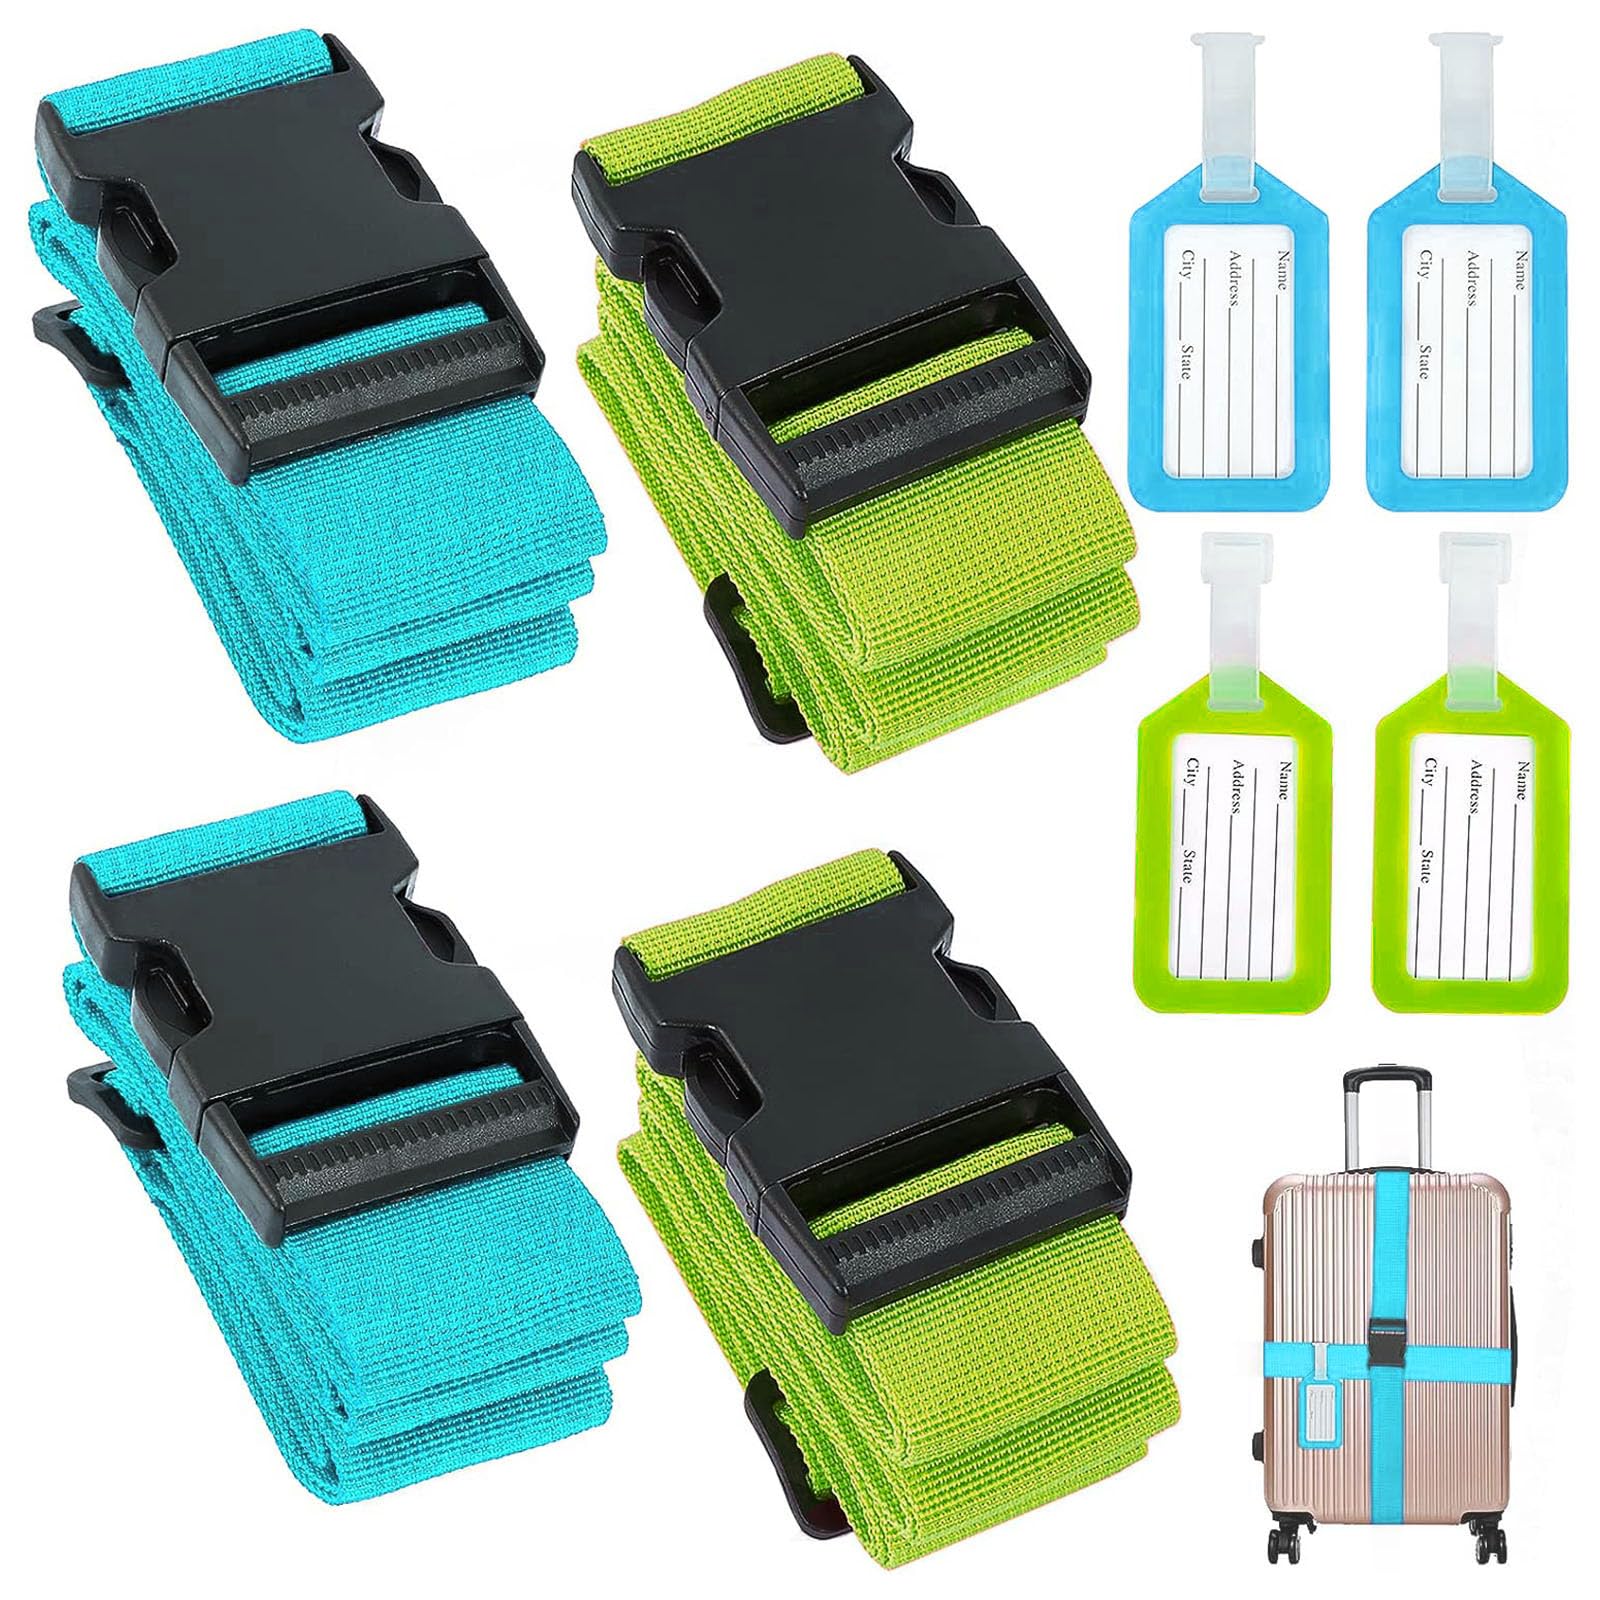 Luggage Strap, xlwen 4 Pcs Gepäckgurte mit Adressschild, Reisezubehör Suitcase Strap zum Sicheren Verschließen für Koffer Markierung, 2 Farben Koffergurt für Schnell erkennen Gepäck(Blau&Grün) von xlwen